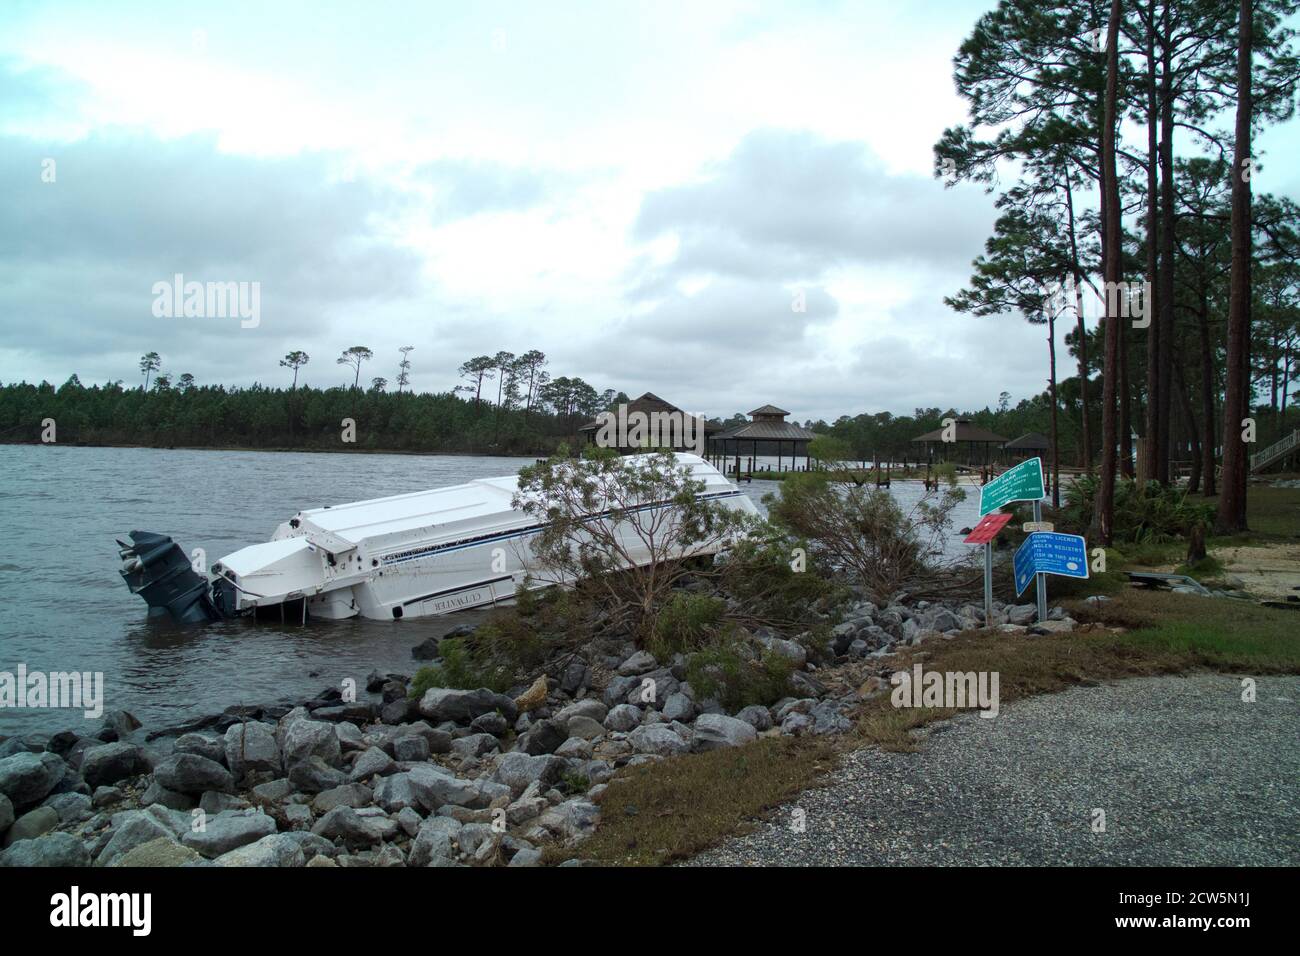 Bateau de moteur renversé sur Perdido Bay à la suite de l'ouragan Sally dans le sud de l'Alabama, aux États-Unis. Banque D'Images